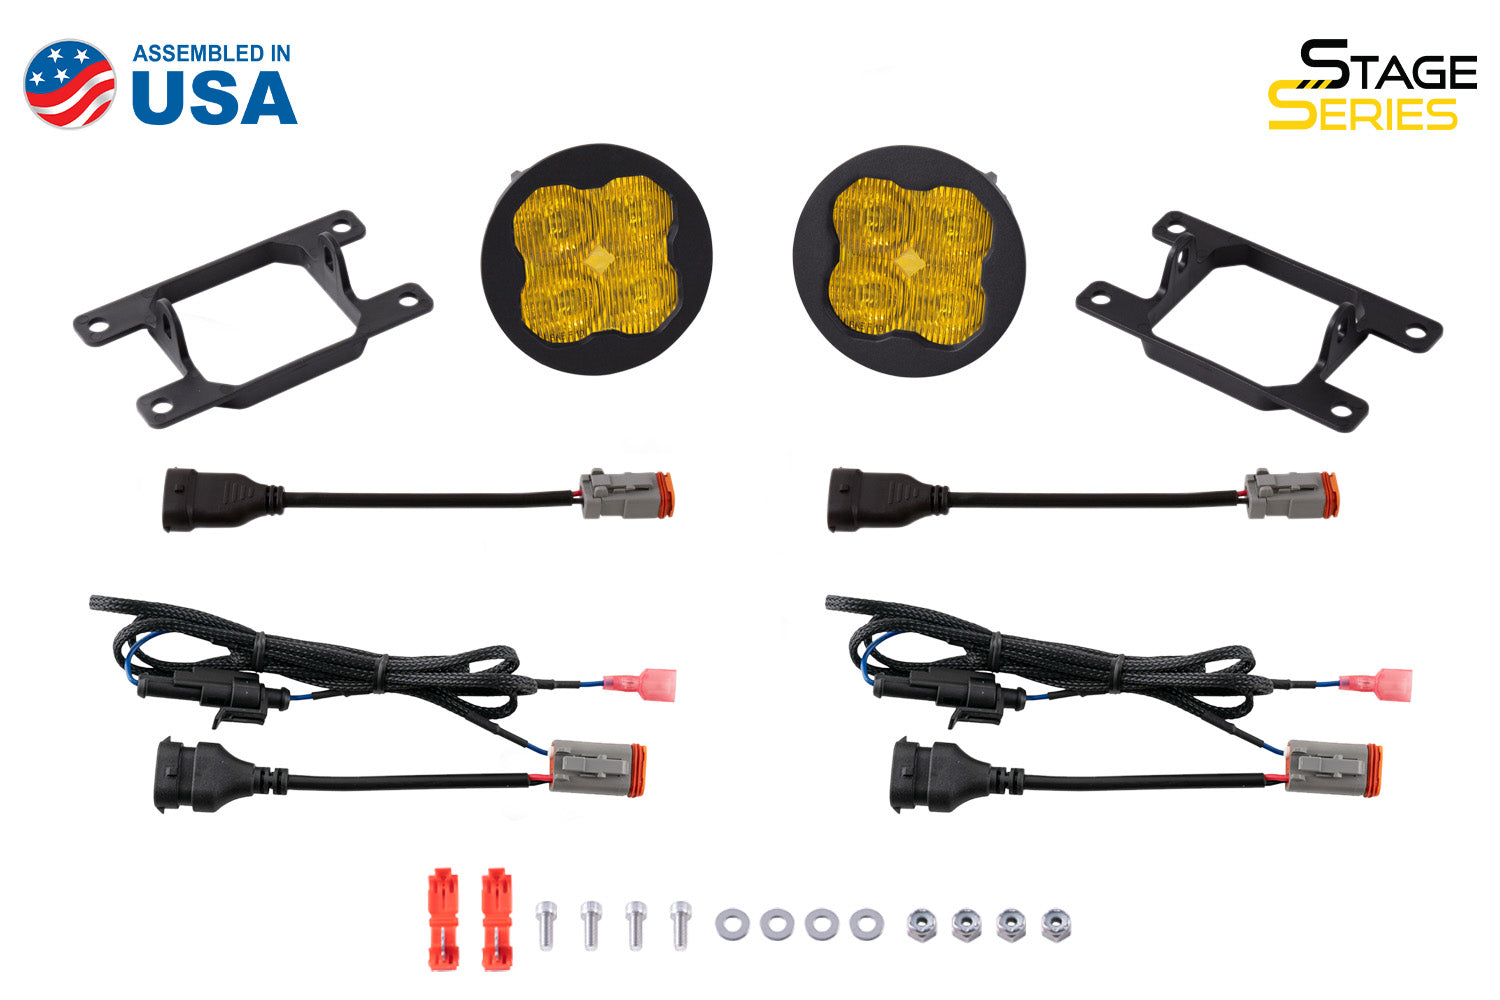 SS3 LED Fog Light Kit for 2013-2015 Honda Crosstour Yellow SAE Fog Sport Diode Dynamics